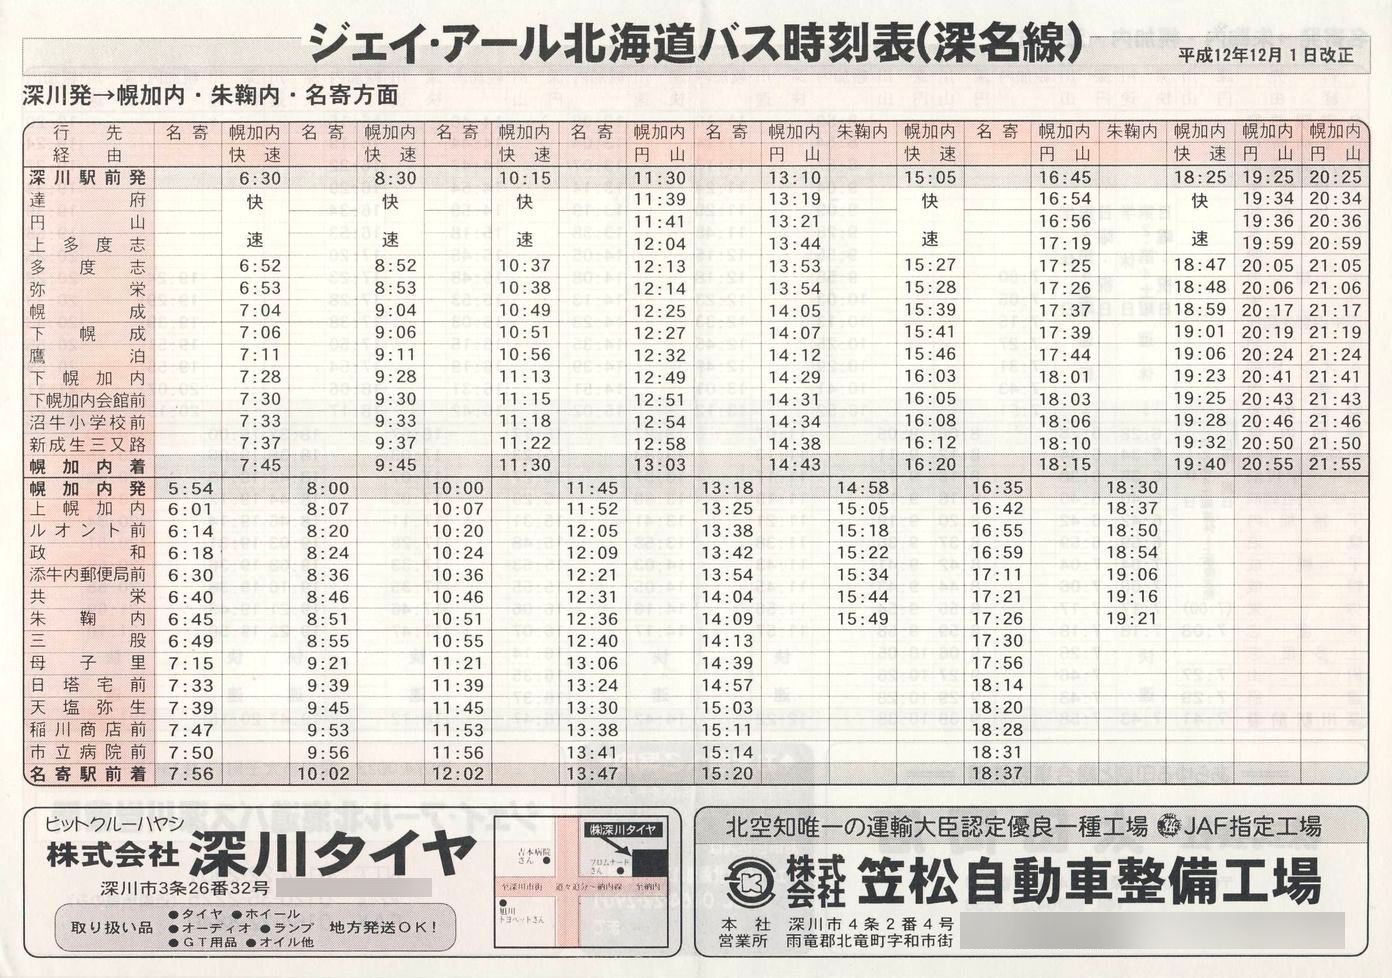 2000-12-01改正_ジェイ・アール北海道バス_深名線時刻表表面